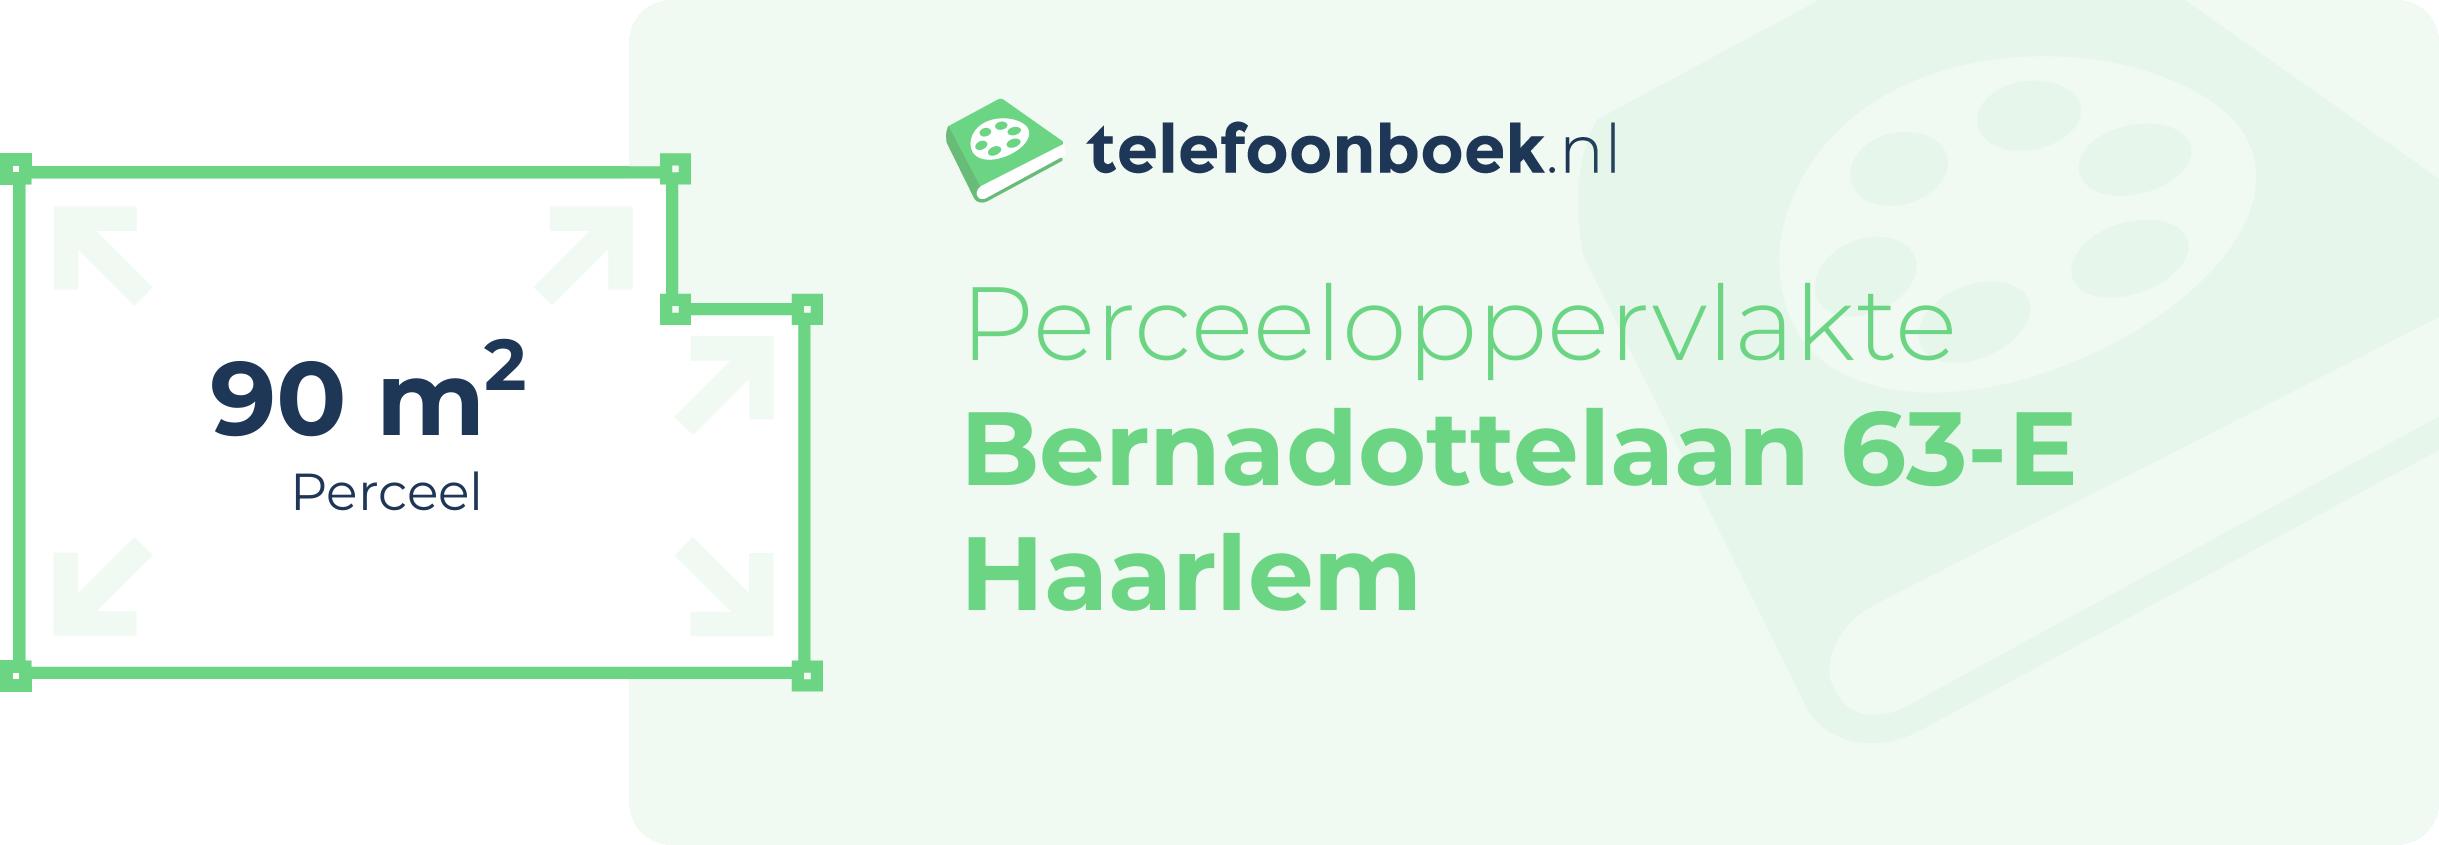 Perceeloppervlakte Bernadottelaan 63-E Haarlem